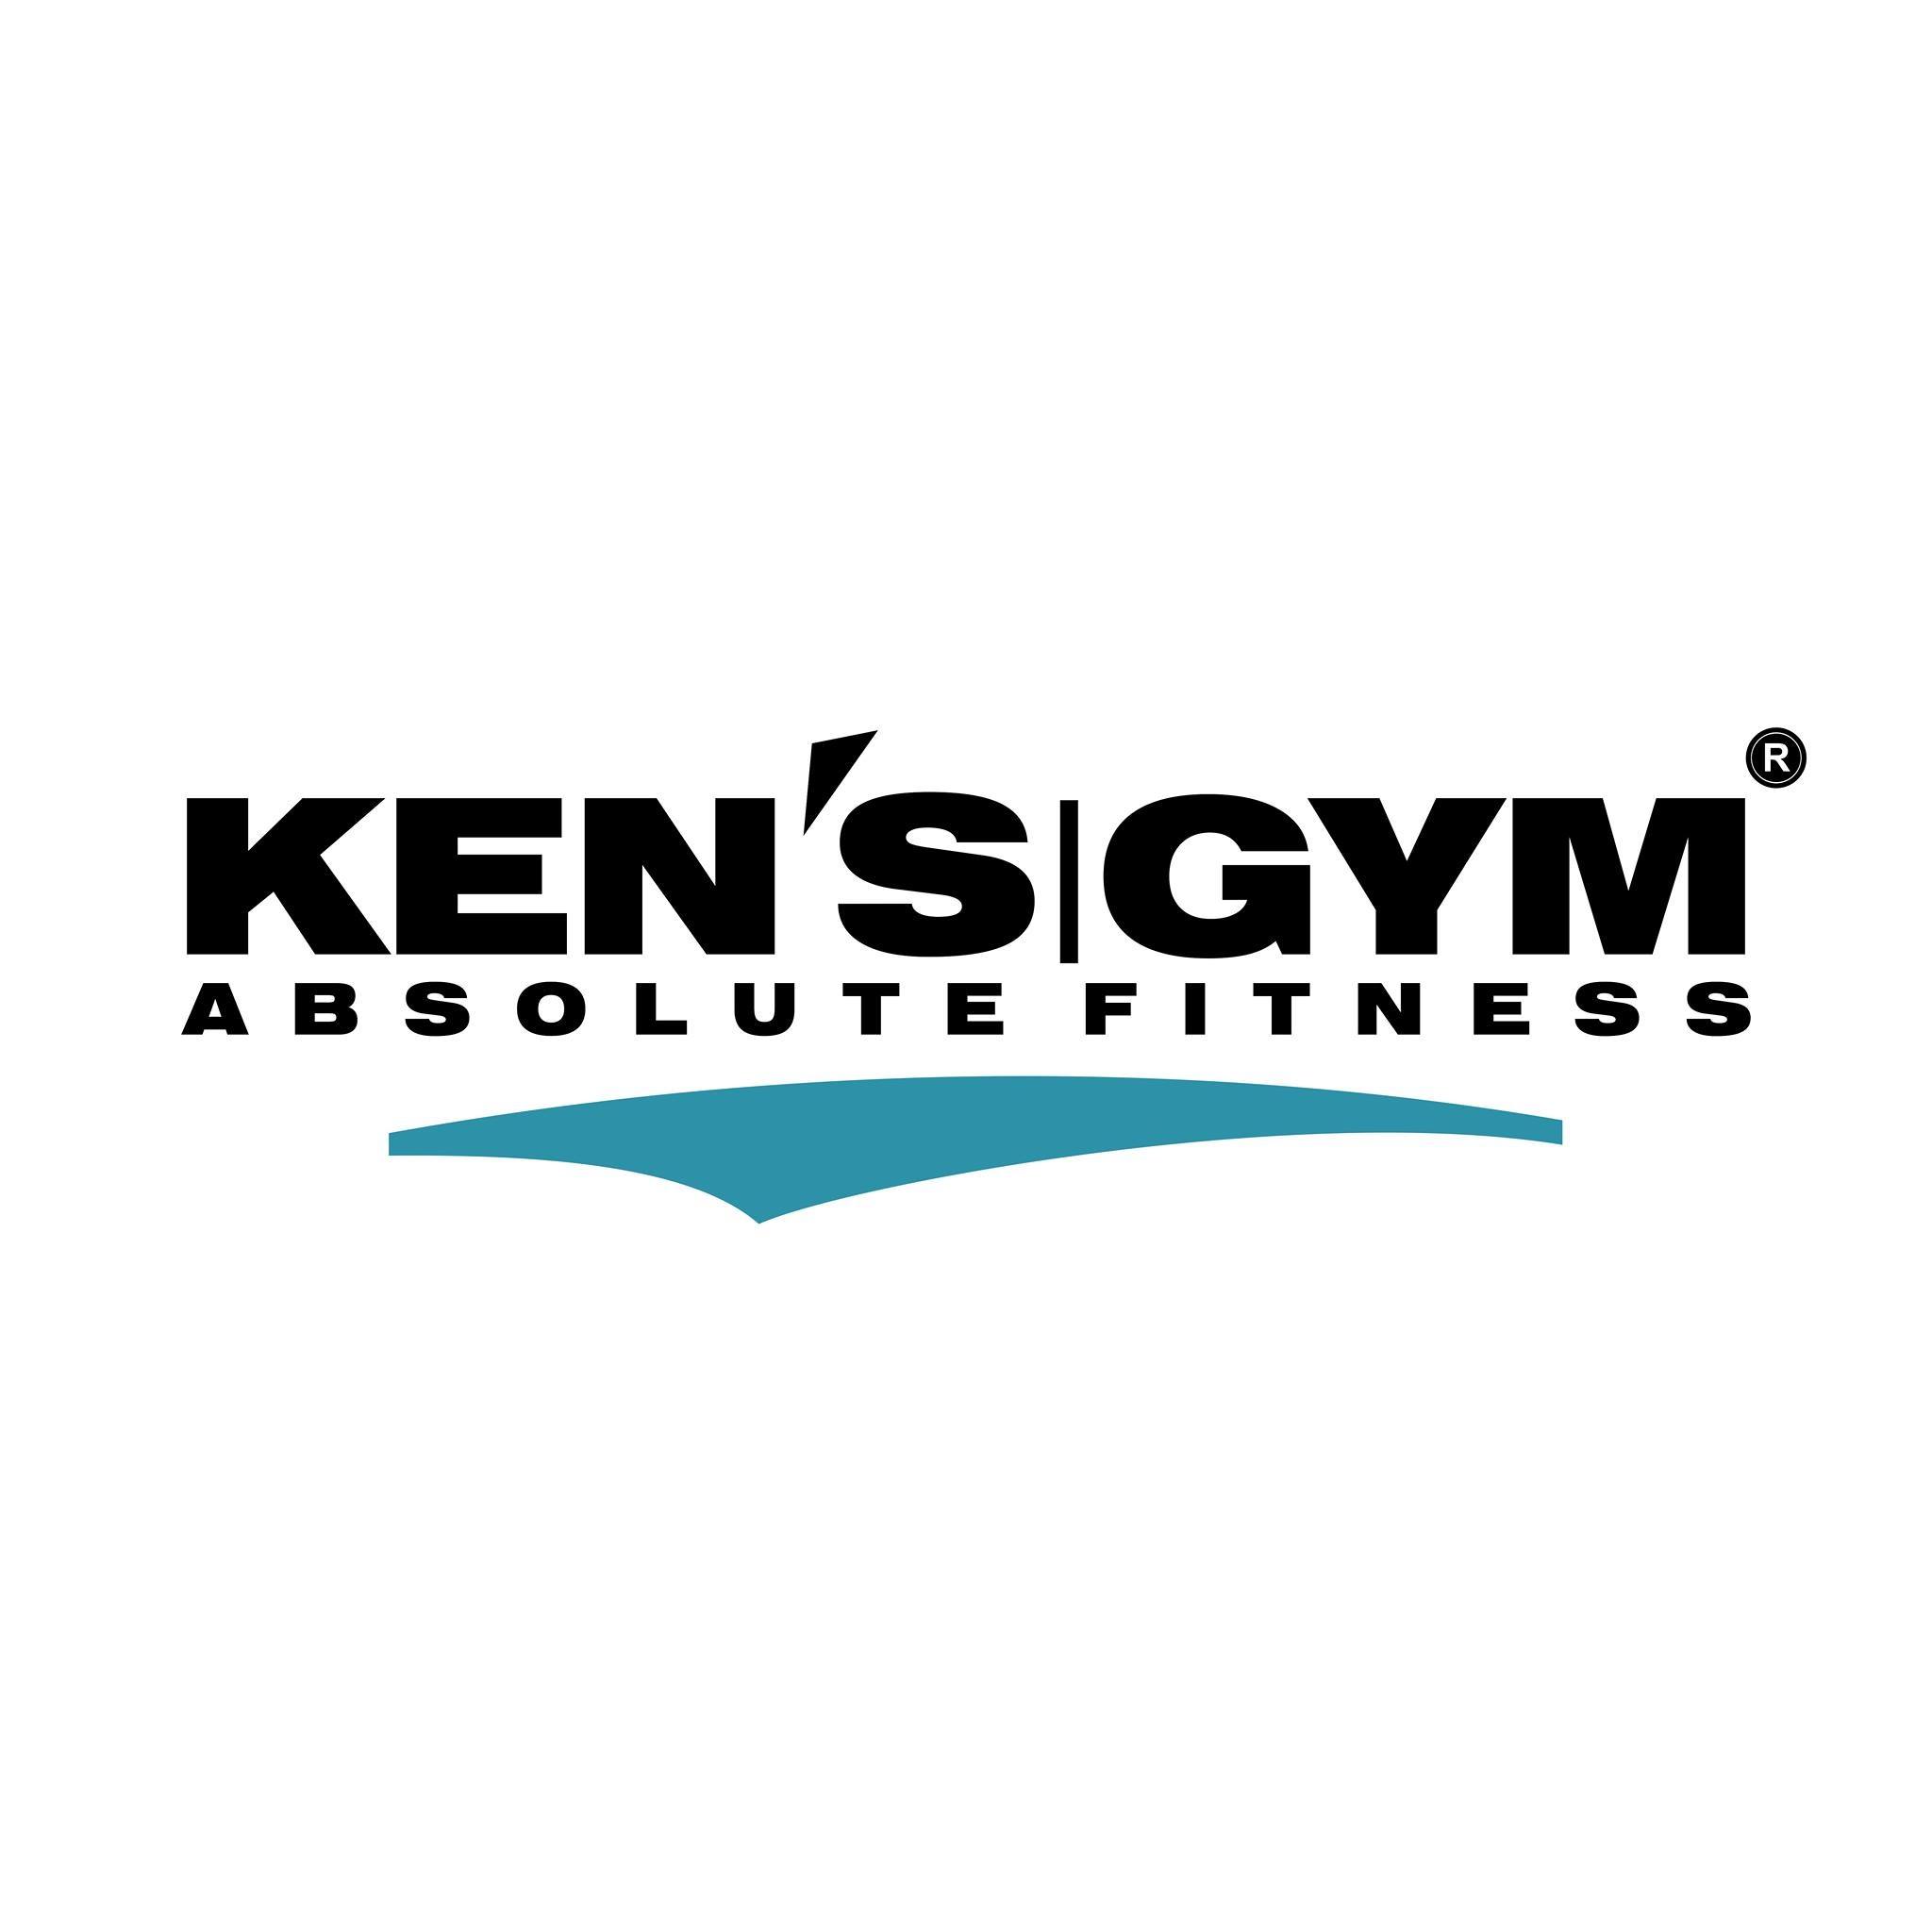 Ken's Gym - Logo